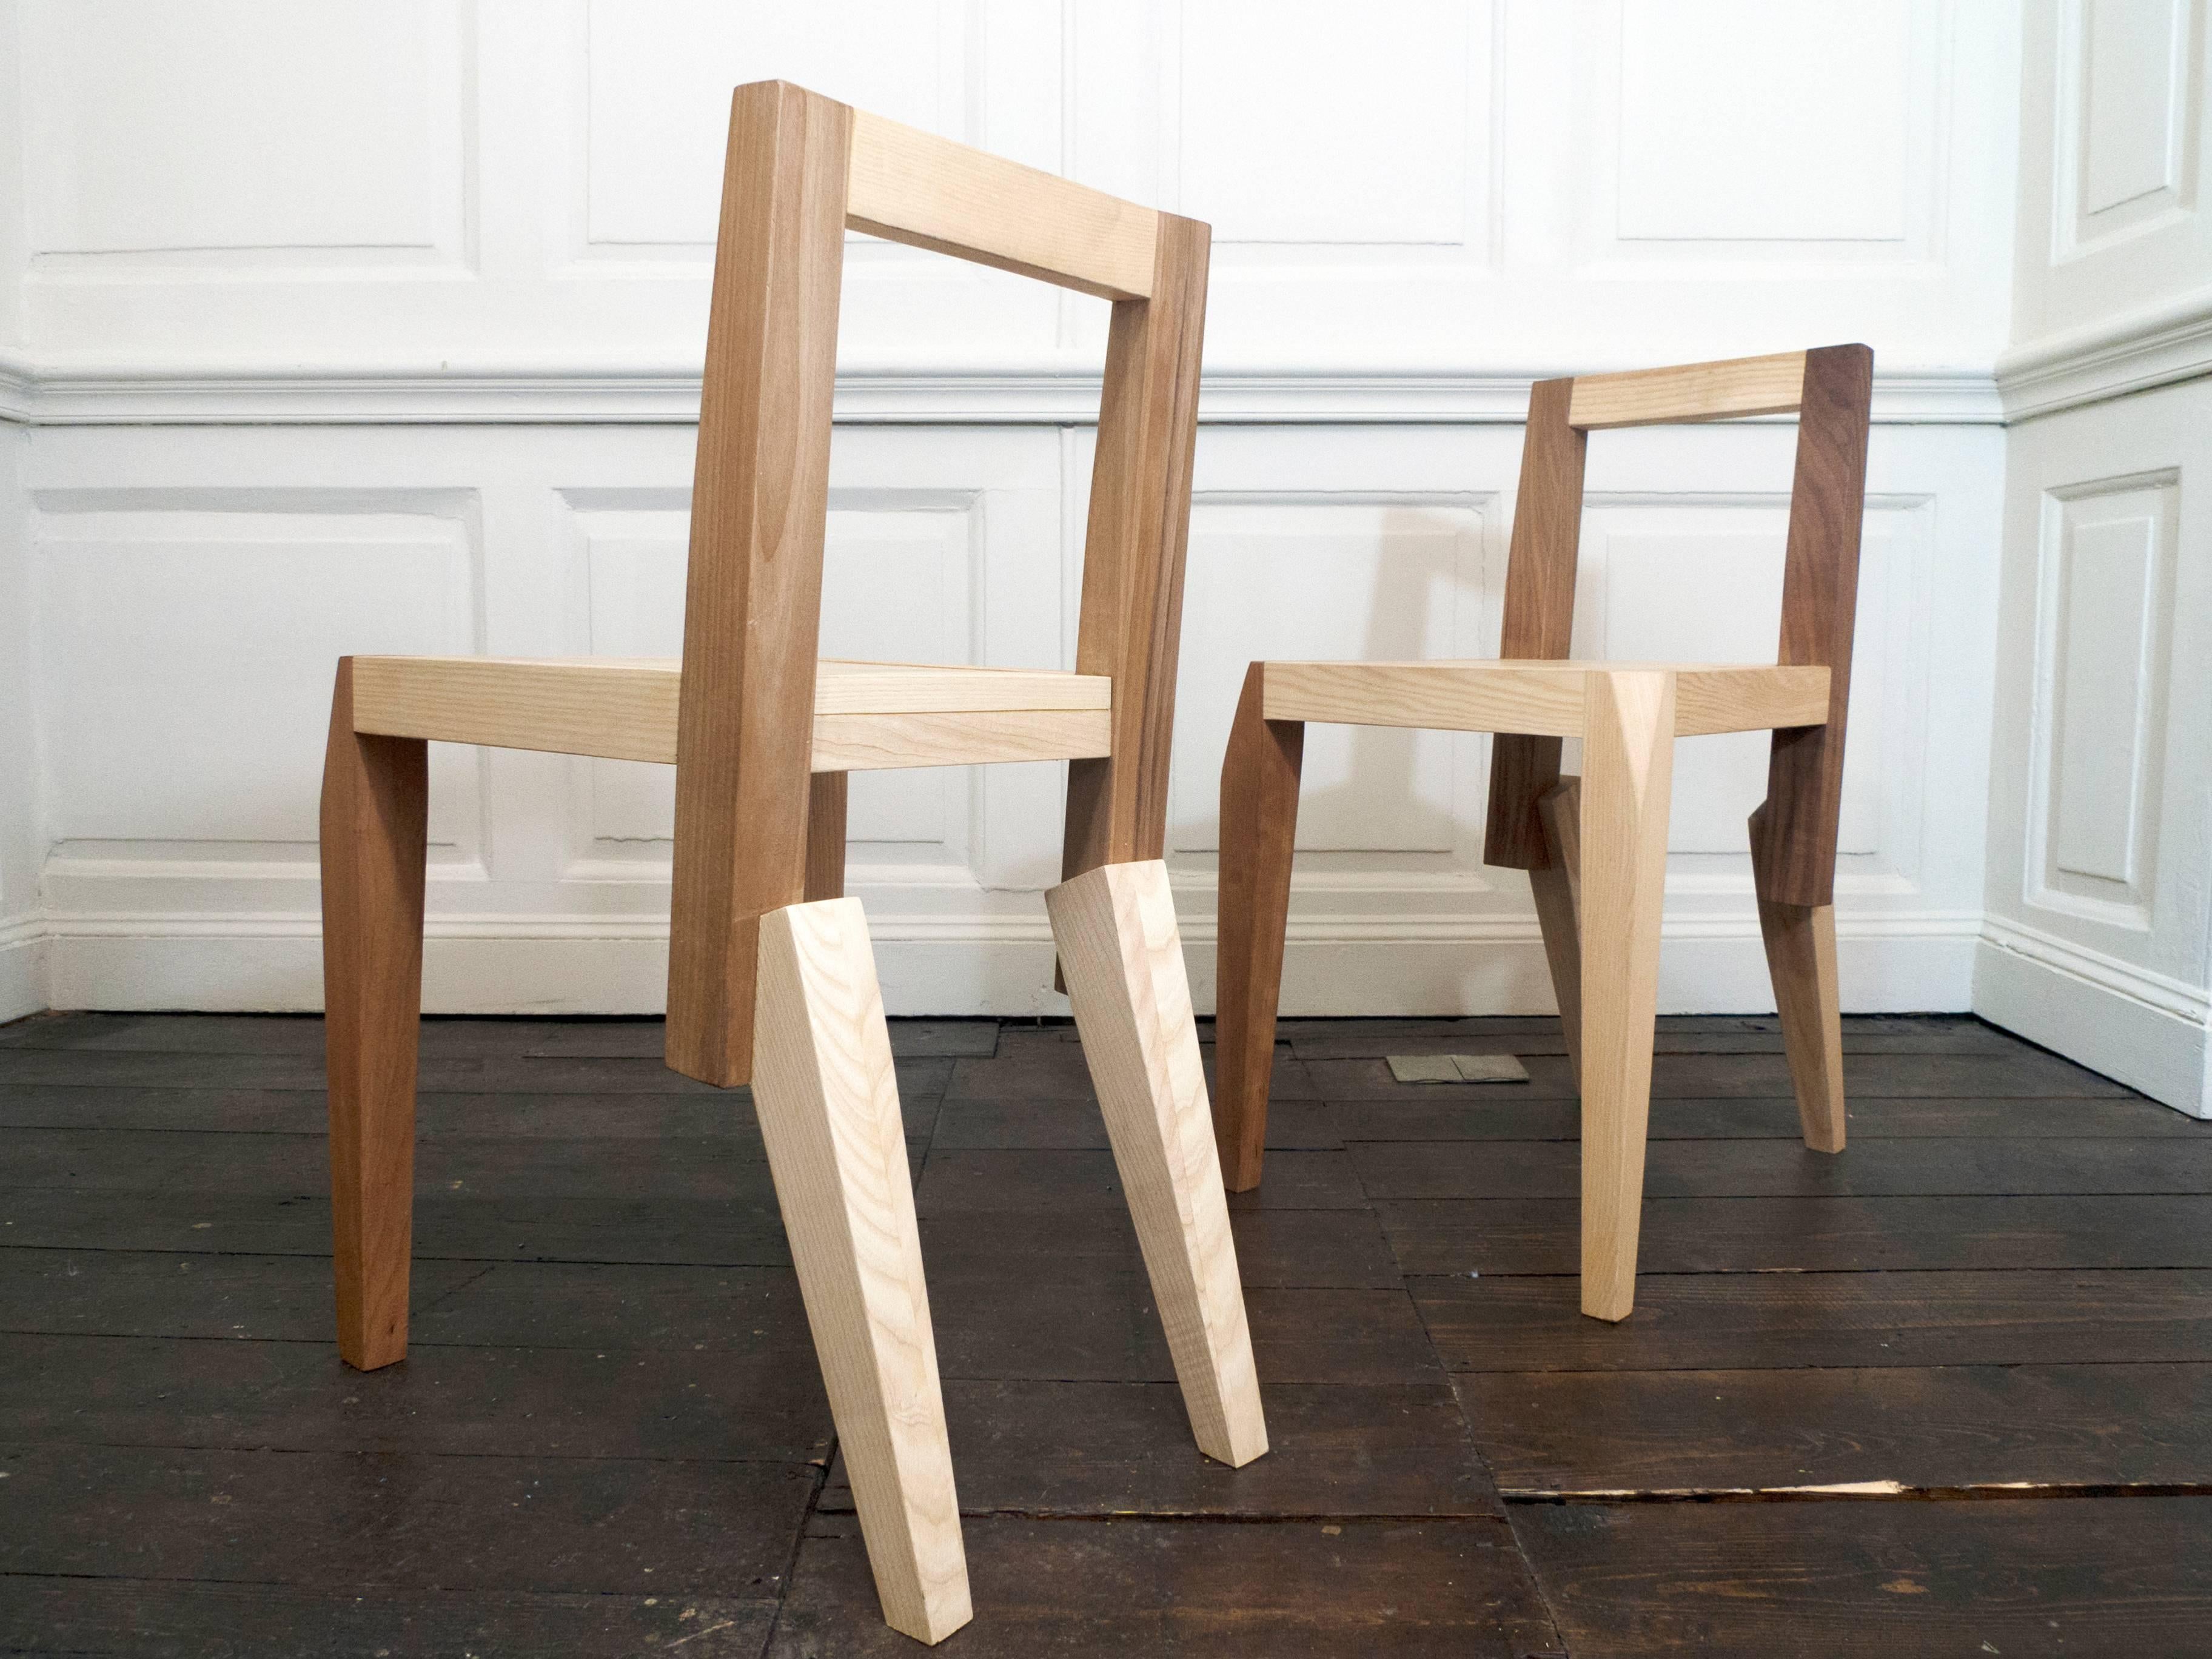 Ein von toskanischen Handwerkern handgefertigter Esszimmerstuhl aus Massivholz, der eine einfache geradlinige Formensprache mit einer zoomorphen Silhouette verbindet. Dank des raffinierten Gelenks an den hinteren Beinen entsteht ein animalisches